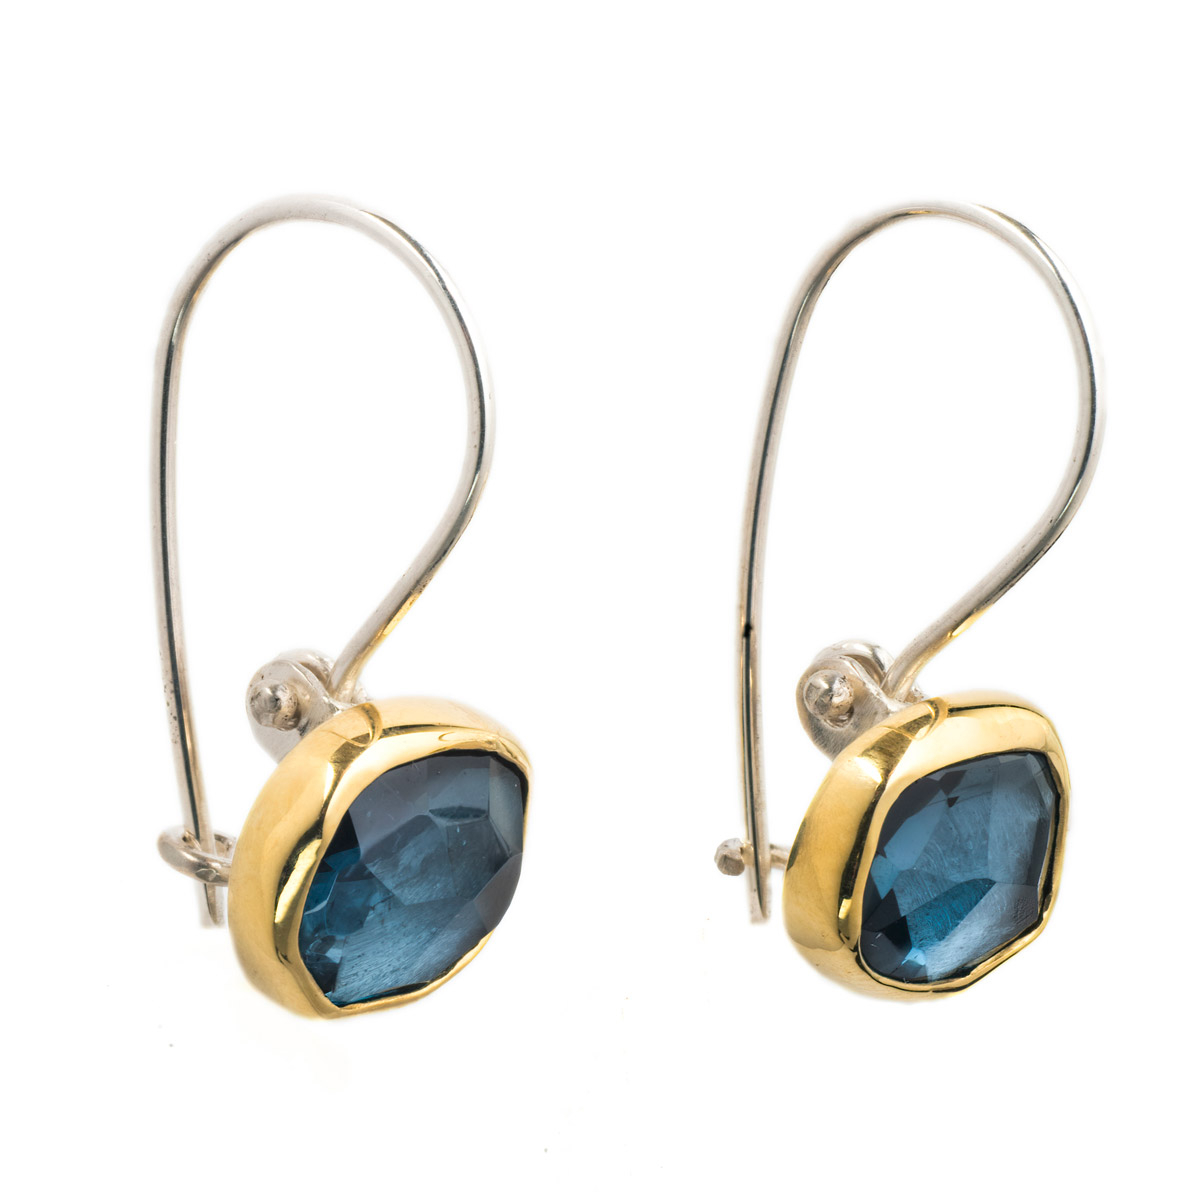 Blue Topaz hanging earrings in Gold bezel